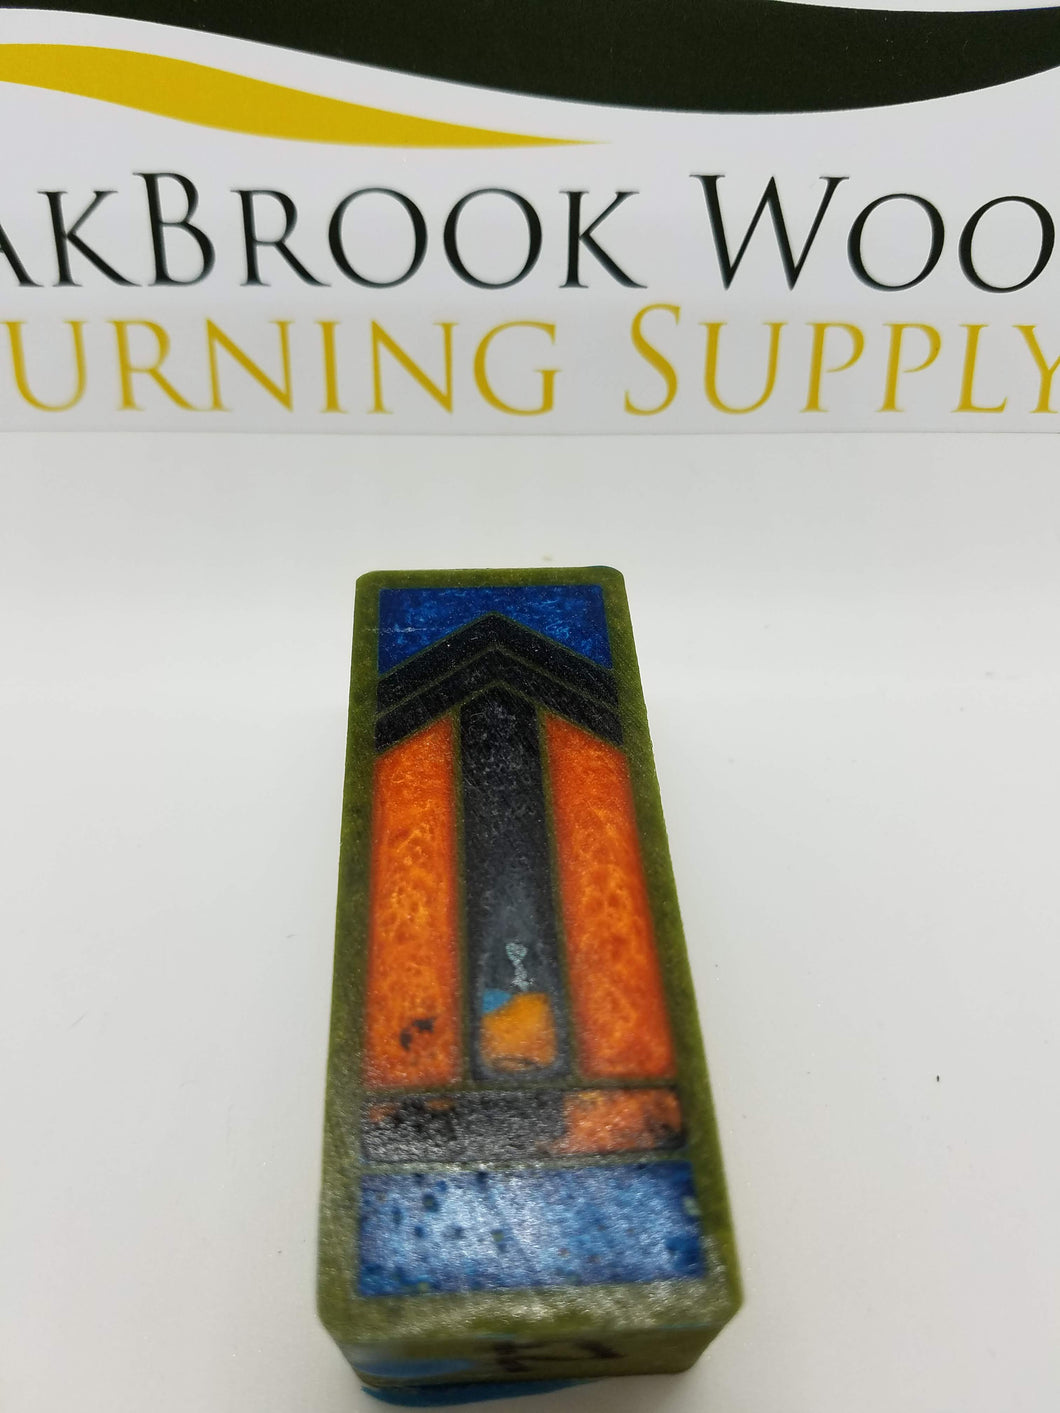 Gisi - Oakbrook Wood Turning Supply